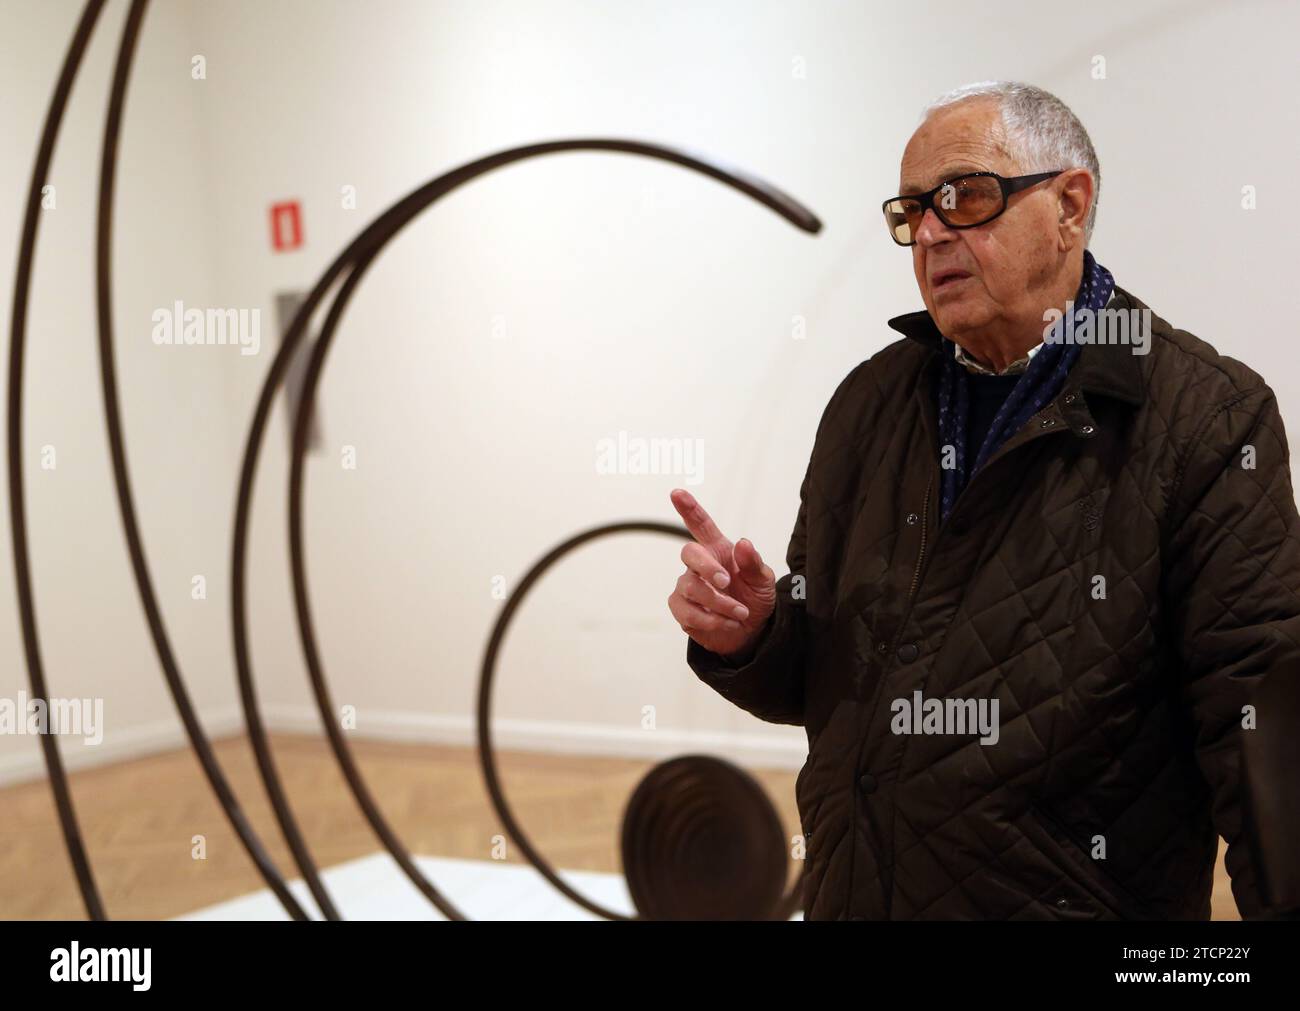 madrid, 10-24-2013.-interview with sculptor martin chirino--photo ernesto acute.archdc. Credit: Album / Archivo ABC / Ernesto Agudo Stock Photo